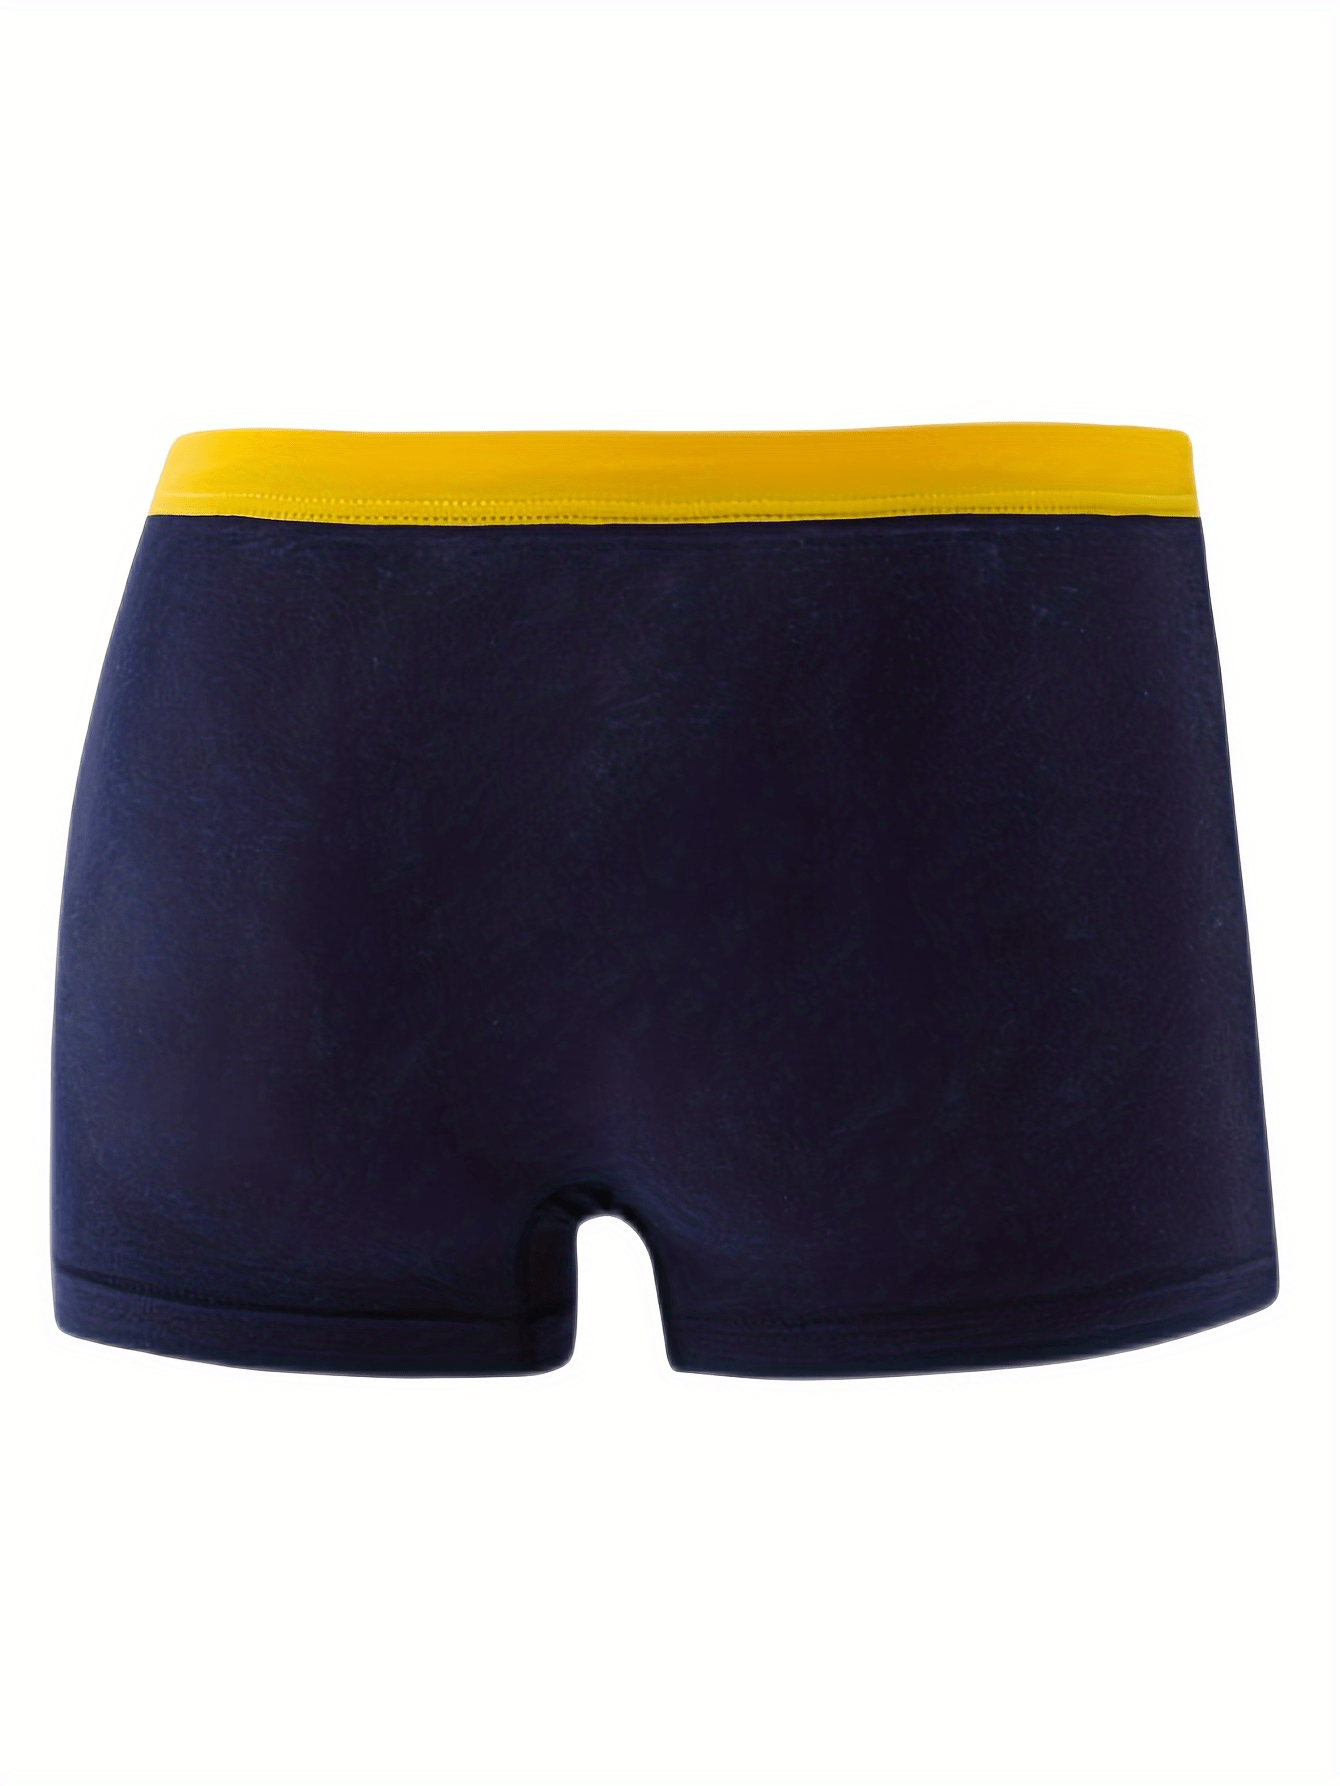 5pcs Boy's Breathable Boxer Briefs, Multiple Colors, Cartoon Pattern Cotton  Underwear, Comfy Kid's Underpants